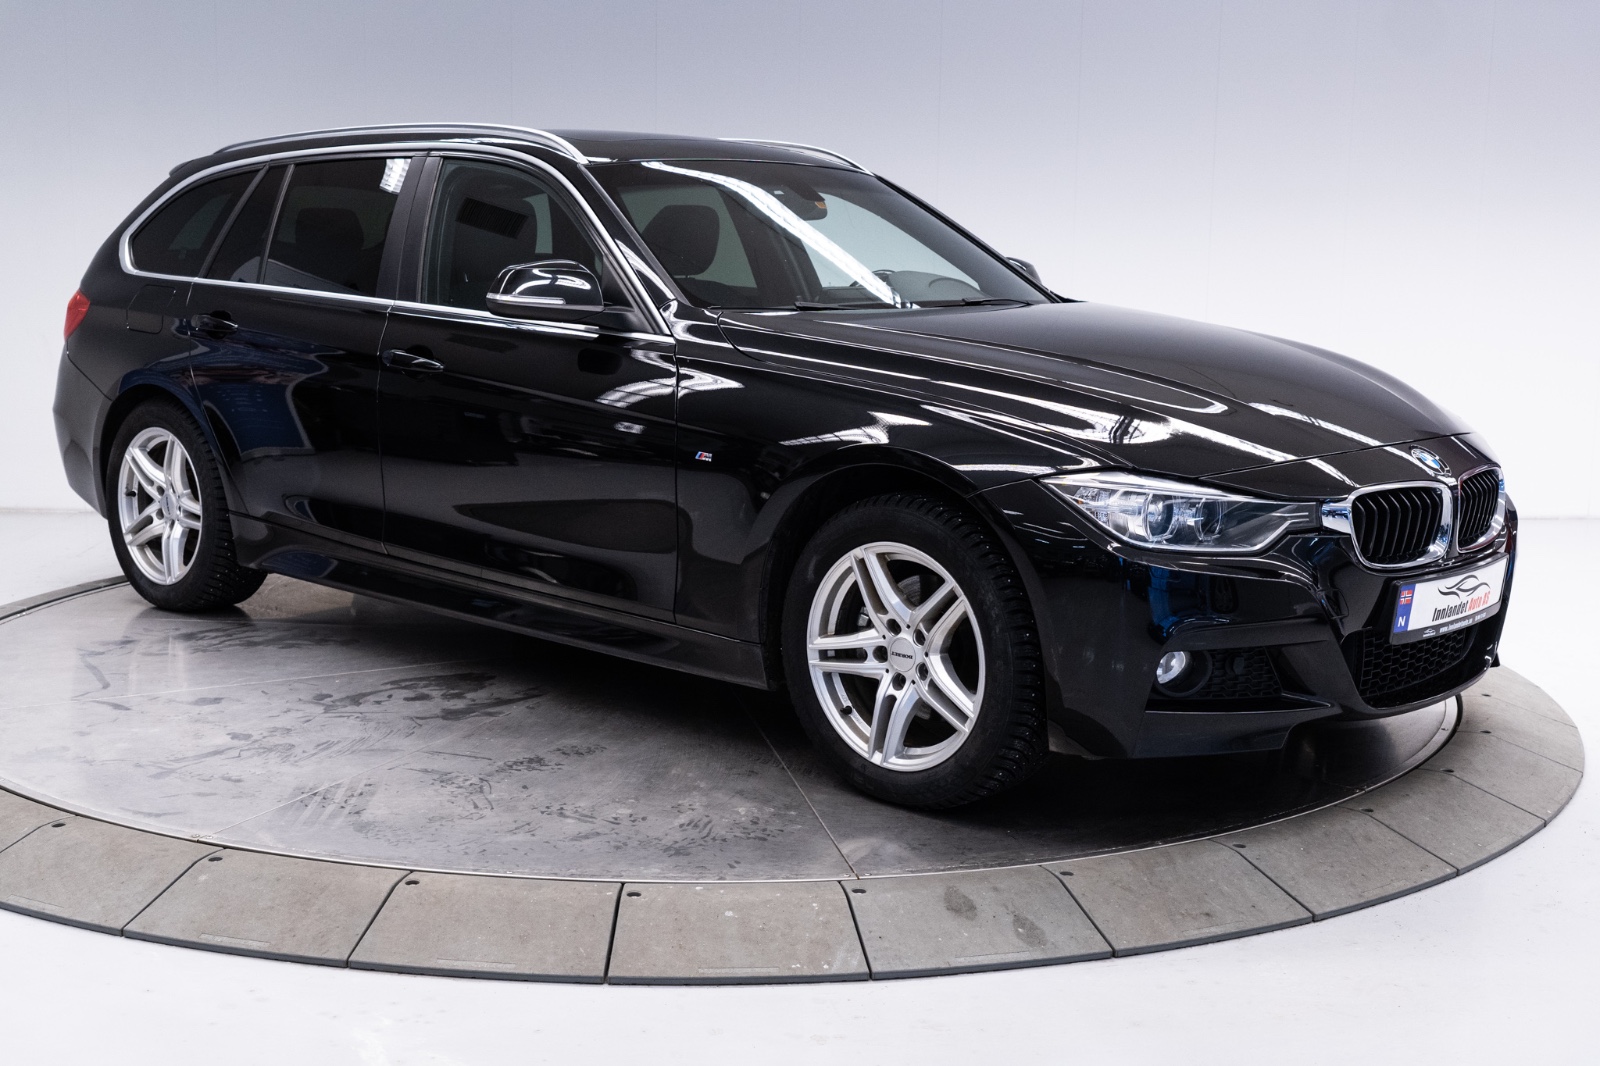 Bilde av 'BMW 3-serie 2014'